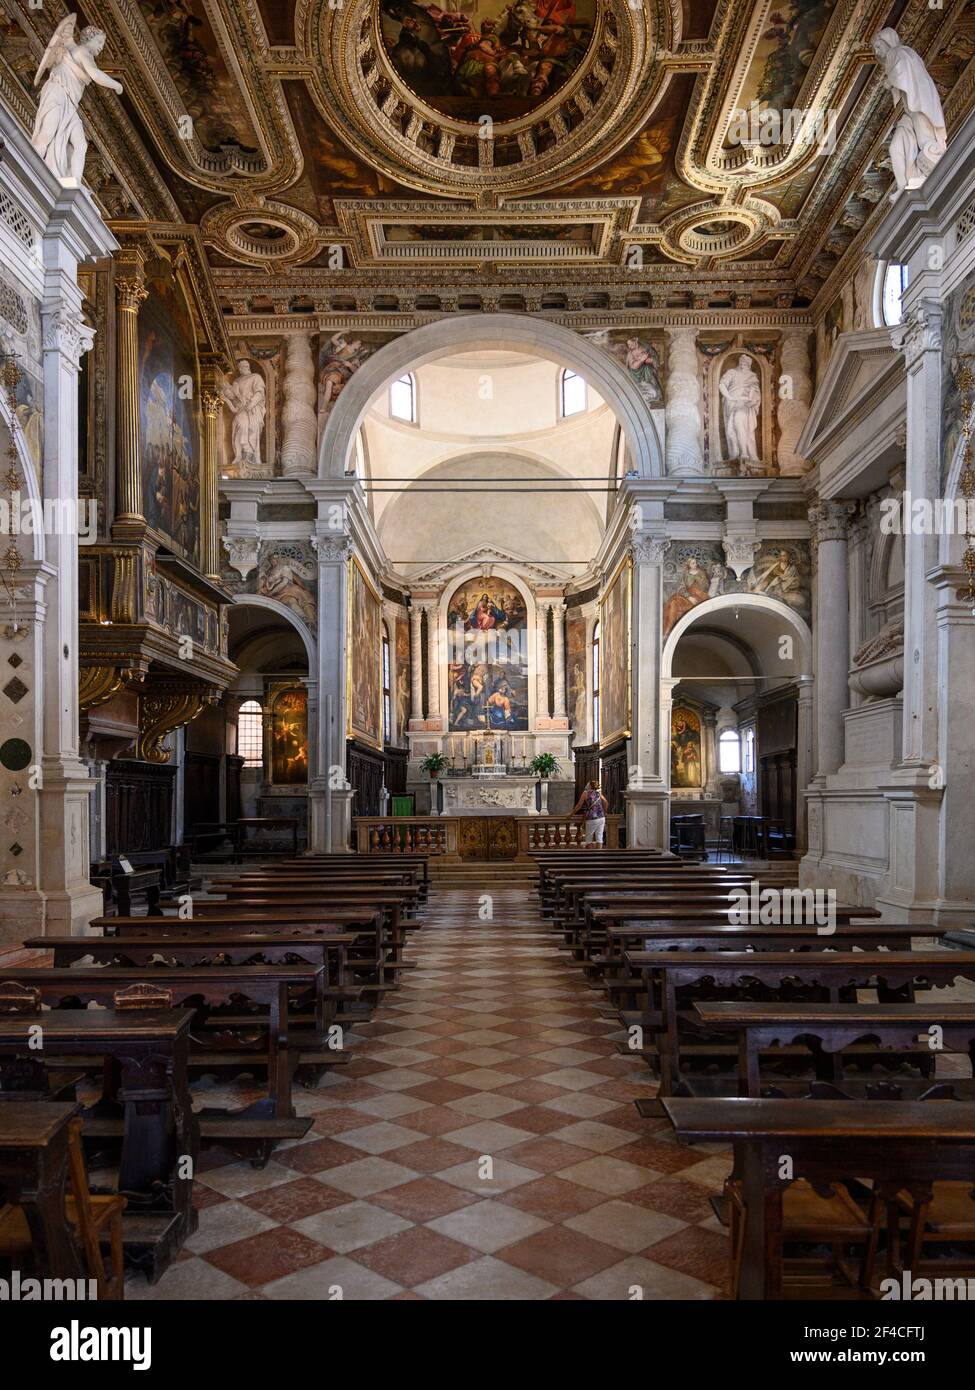 Venise. Italie. Intérieur de la Chiesa di San Sebastiano (église de Saint Sébastien), haut retable, représentant la Vierge et l'enfant dans la gloire avec Banque D'Images